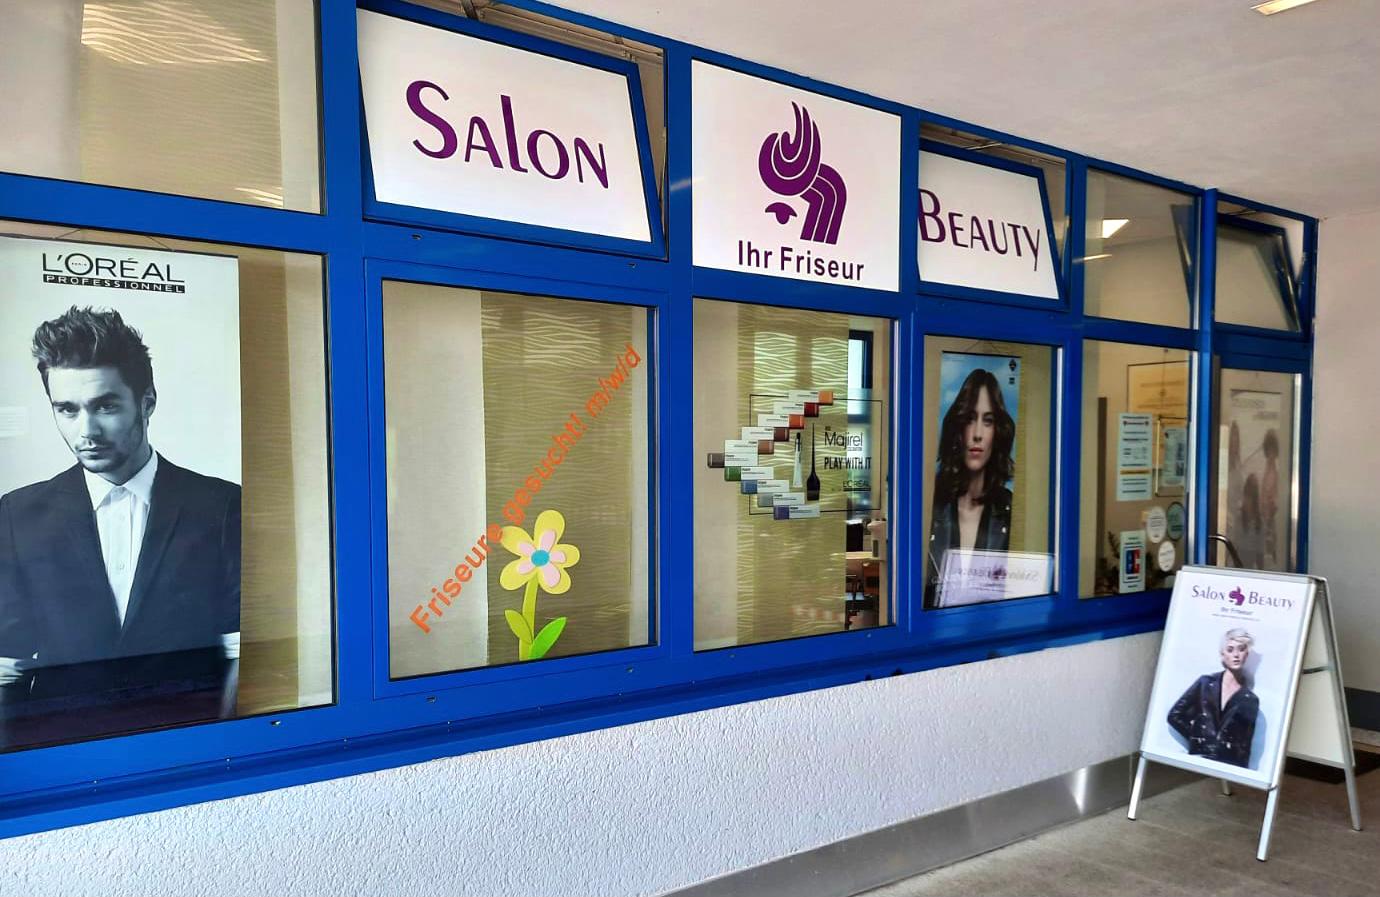 Salon Beauty – Ihr Friseur in Chemnitz, Alfred-Neubert-Straße 17 in Chemnitz